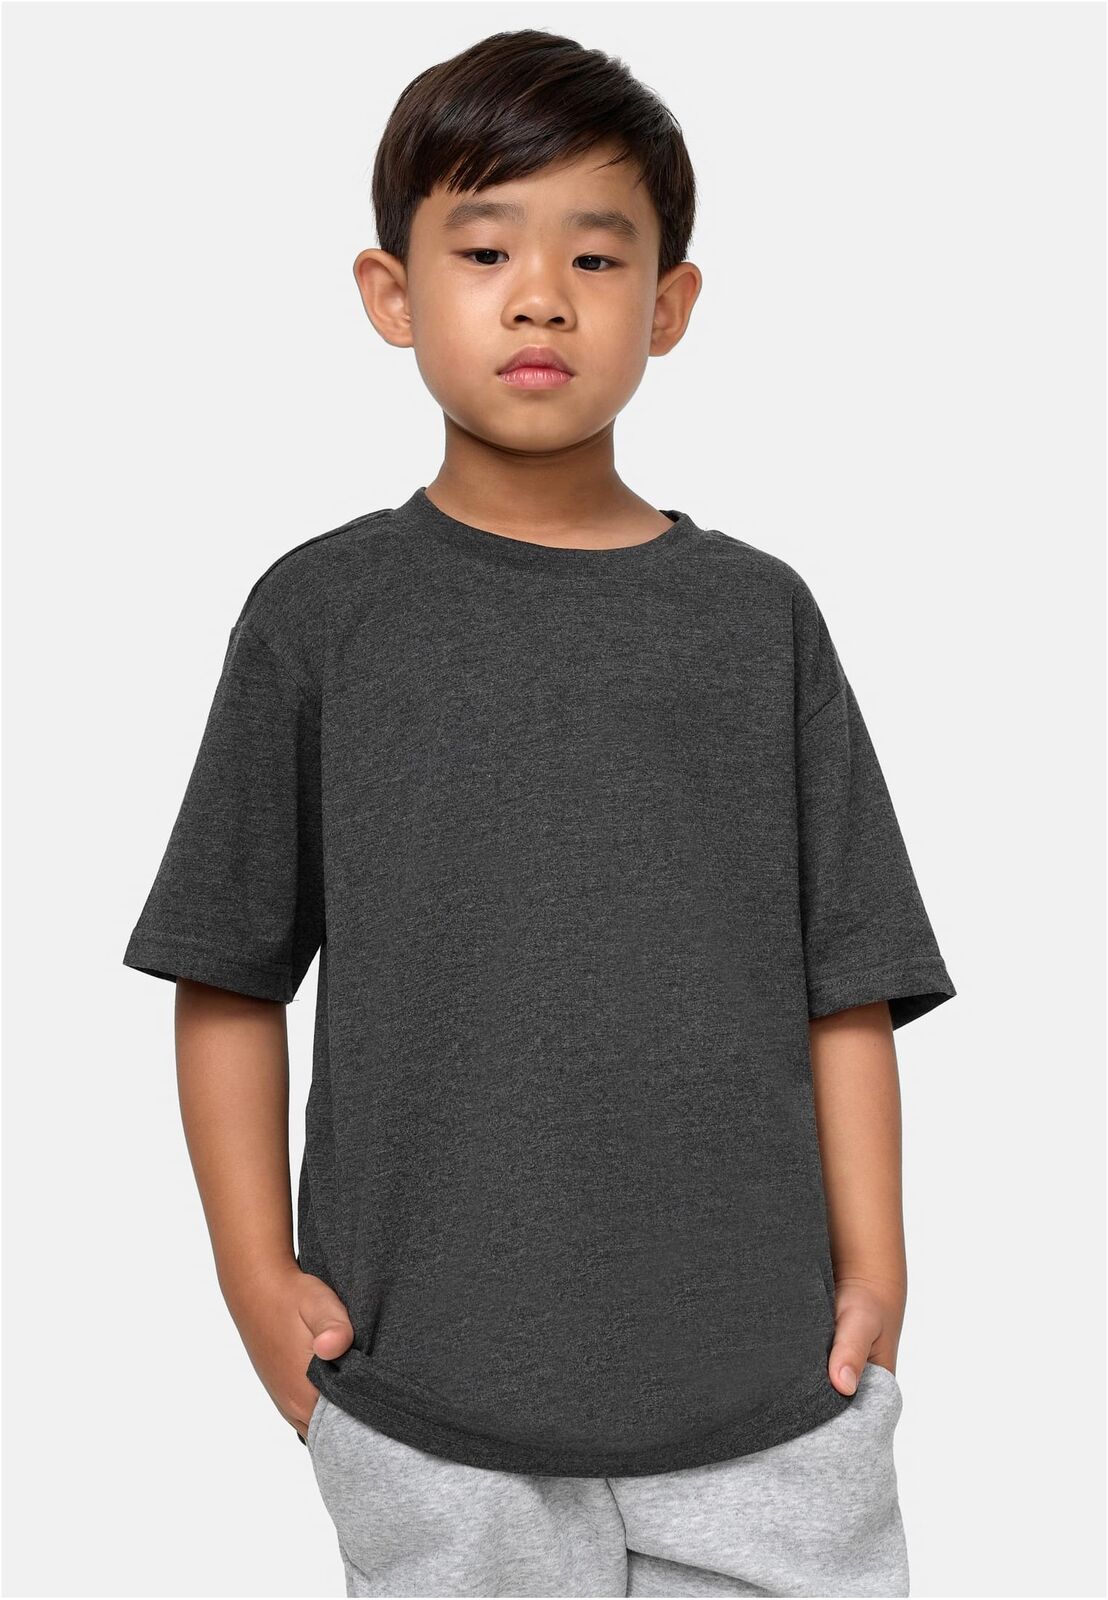 Urban Classics Kids Boys Tall Tee Kinder T-Shirt Oberteil Shirt Oversize  Schnitt | eBay